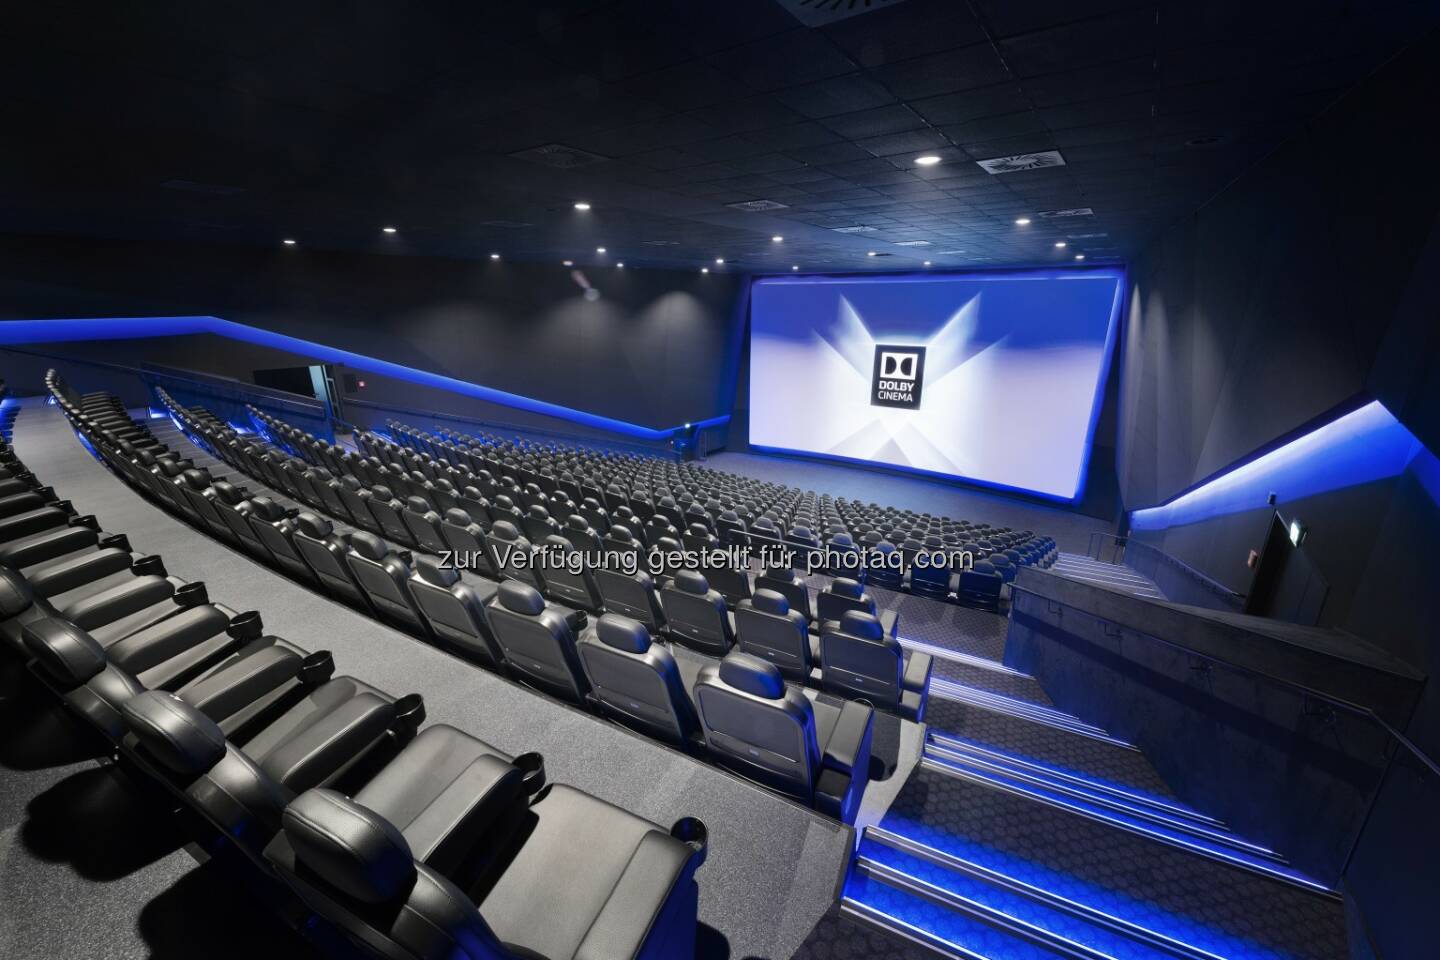 Dolby Cinema Saal im Cineplexx Linz : Modernstes Kino Österreichs: Cineplexx Linz setzt neue Maßstäbe : Cineplexx investierte vier Millionen Euro in Linz und eröffnet exklusiv den ersten Dolby Cinema Saal mit Dolby Vision-Laserprojektion im gesamten deutschsprachigen Raum : Fotocredit: Cineplexx/Koehler